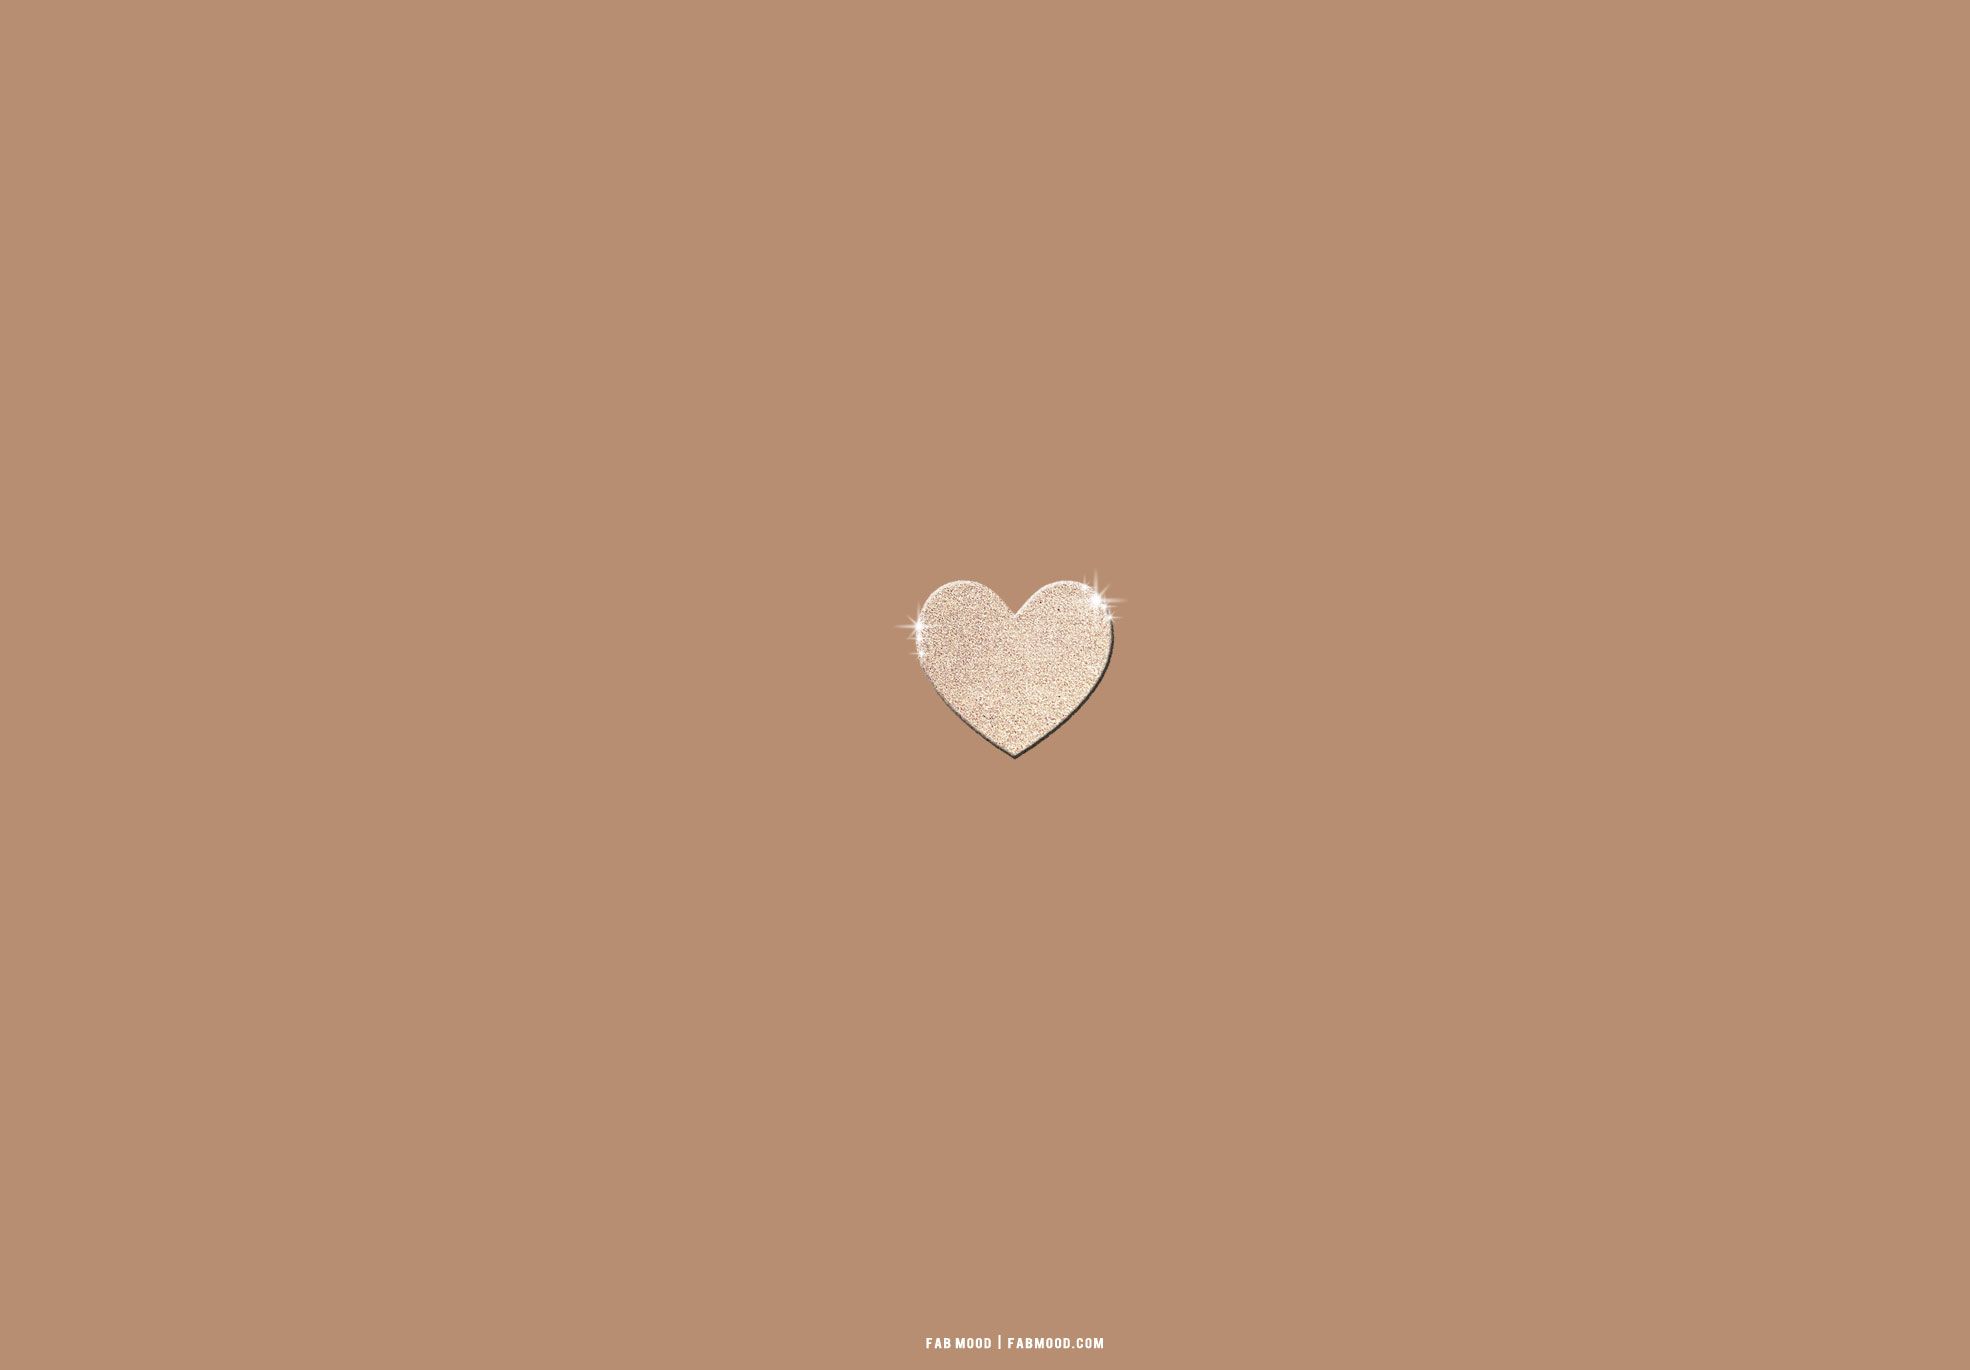  Menschen Hintergrundbild 1970x1370. Brown Aesthetic Wallpaper for Laptop : Glitter Love Heart